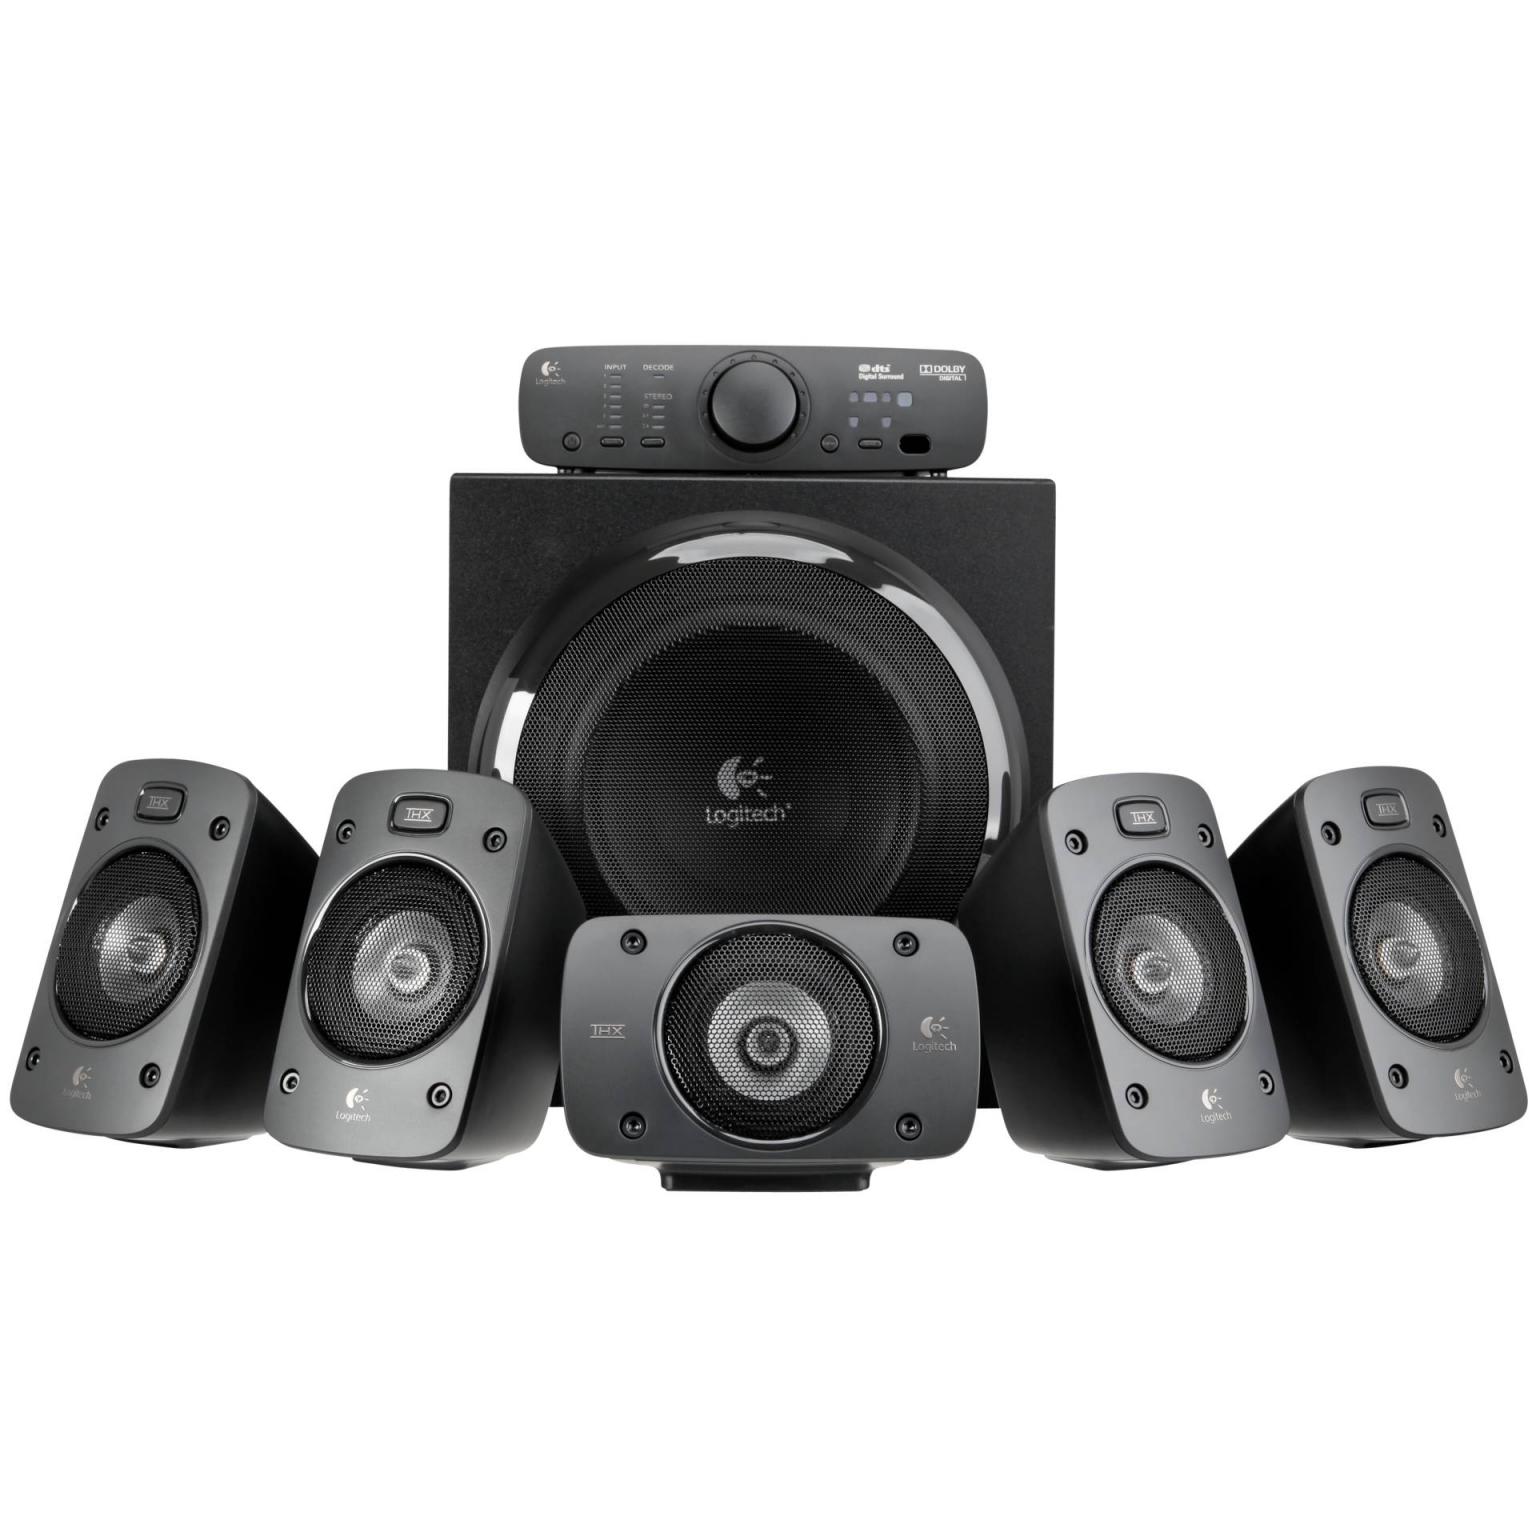 Z906 Surround Sound Speaker System - Surround Sound System